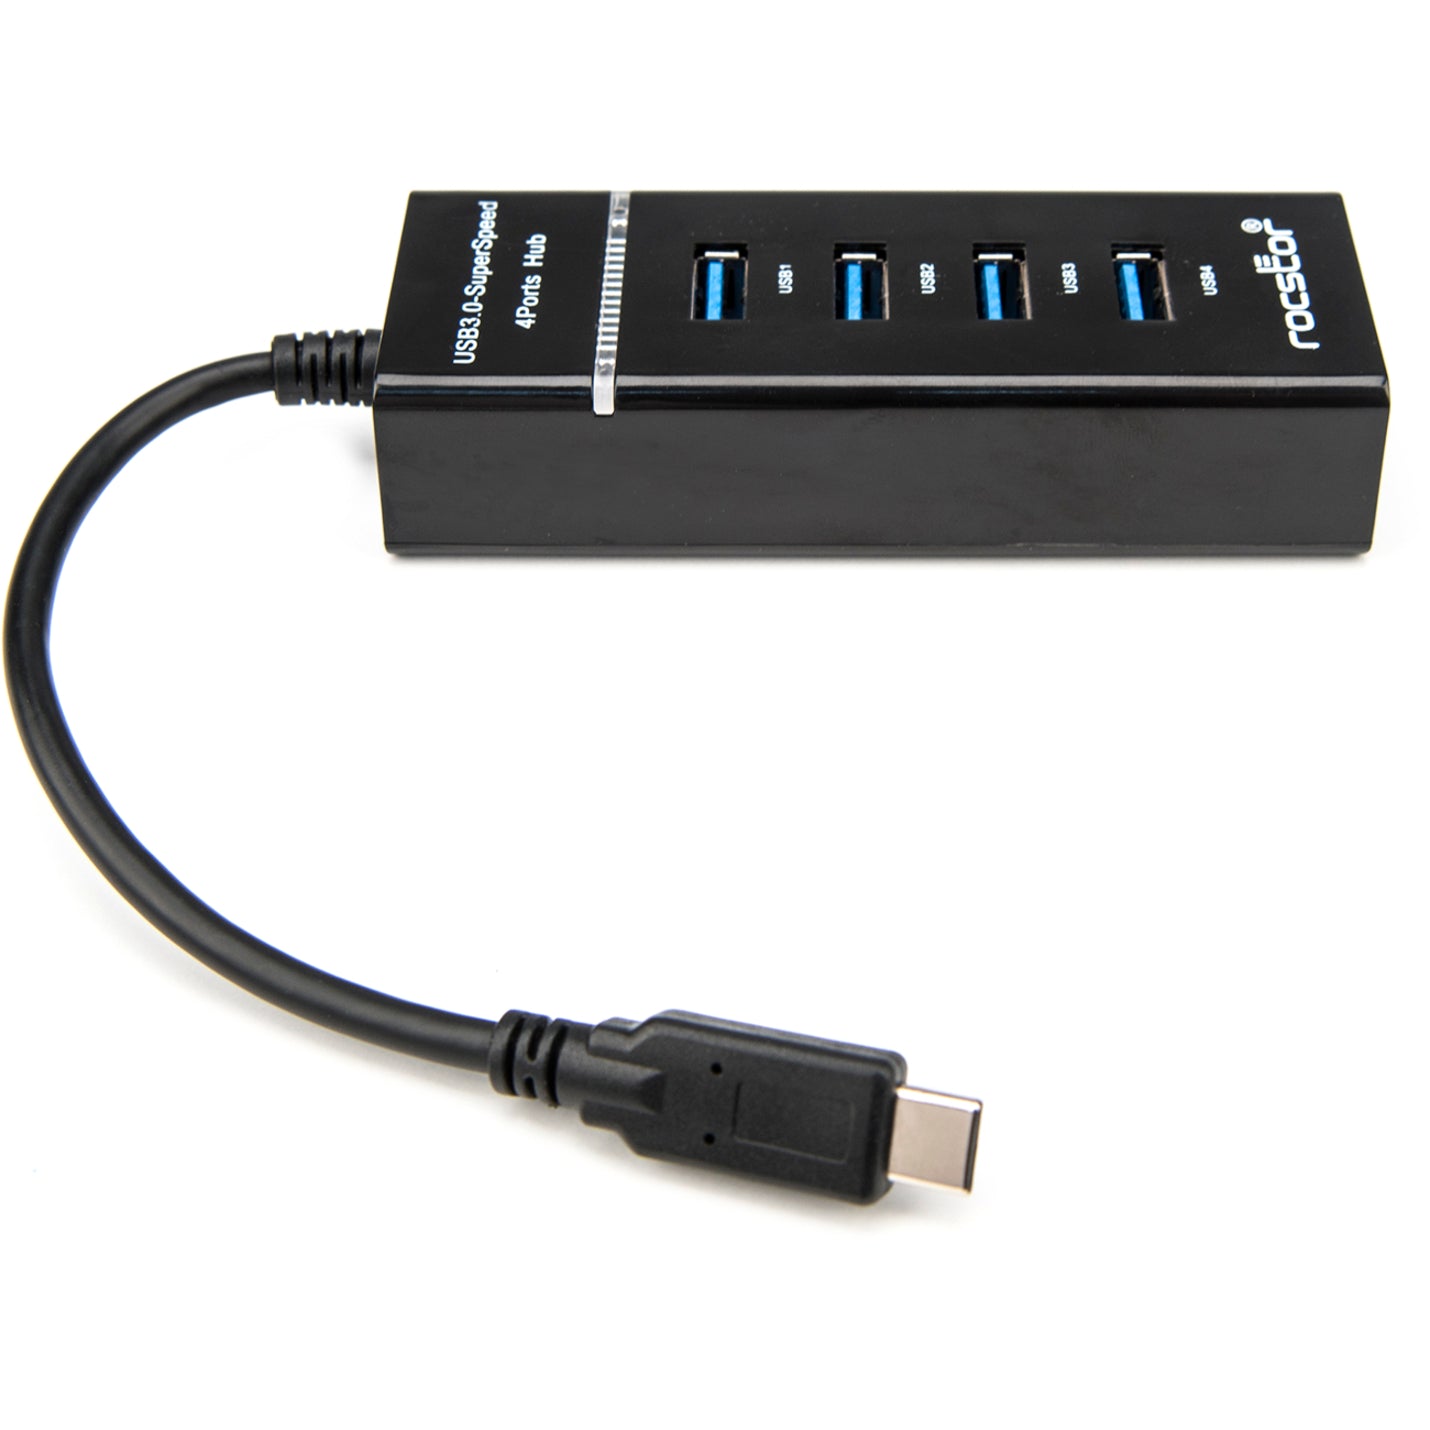 Rocstor Y10A228-B1 Premium Slim Portable 4 Port USB C Hub, 4 USB 3.0 Ports, Bus Powered